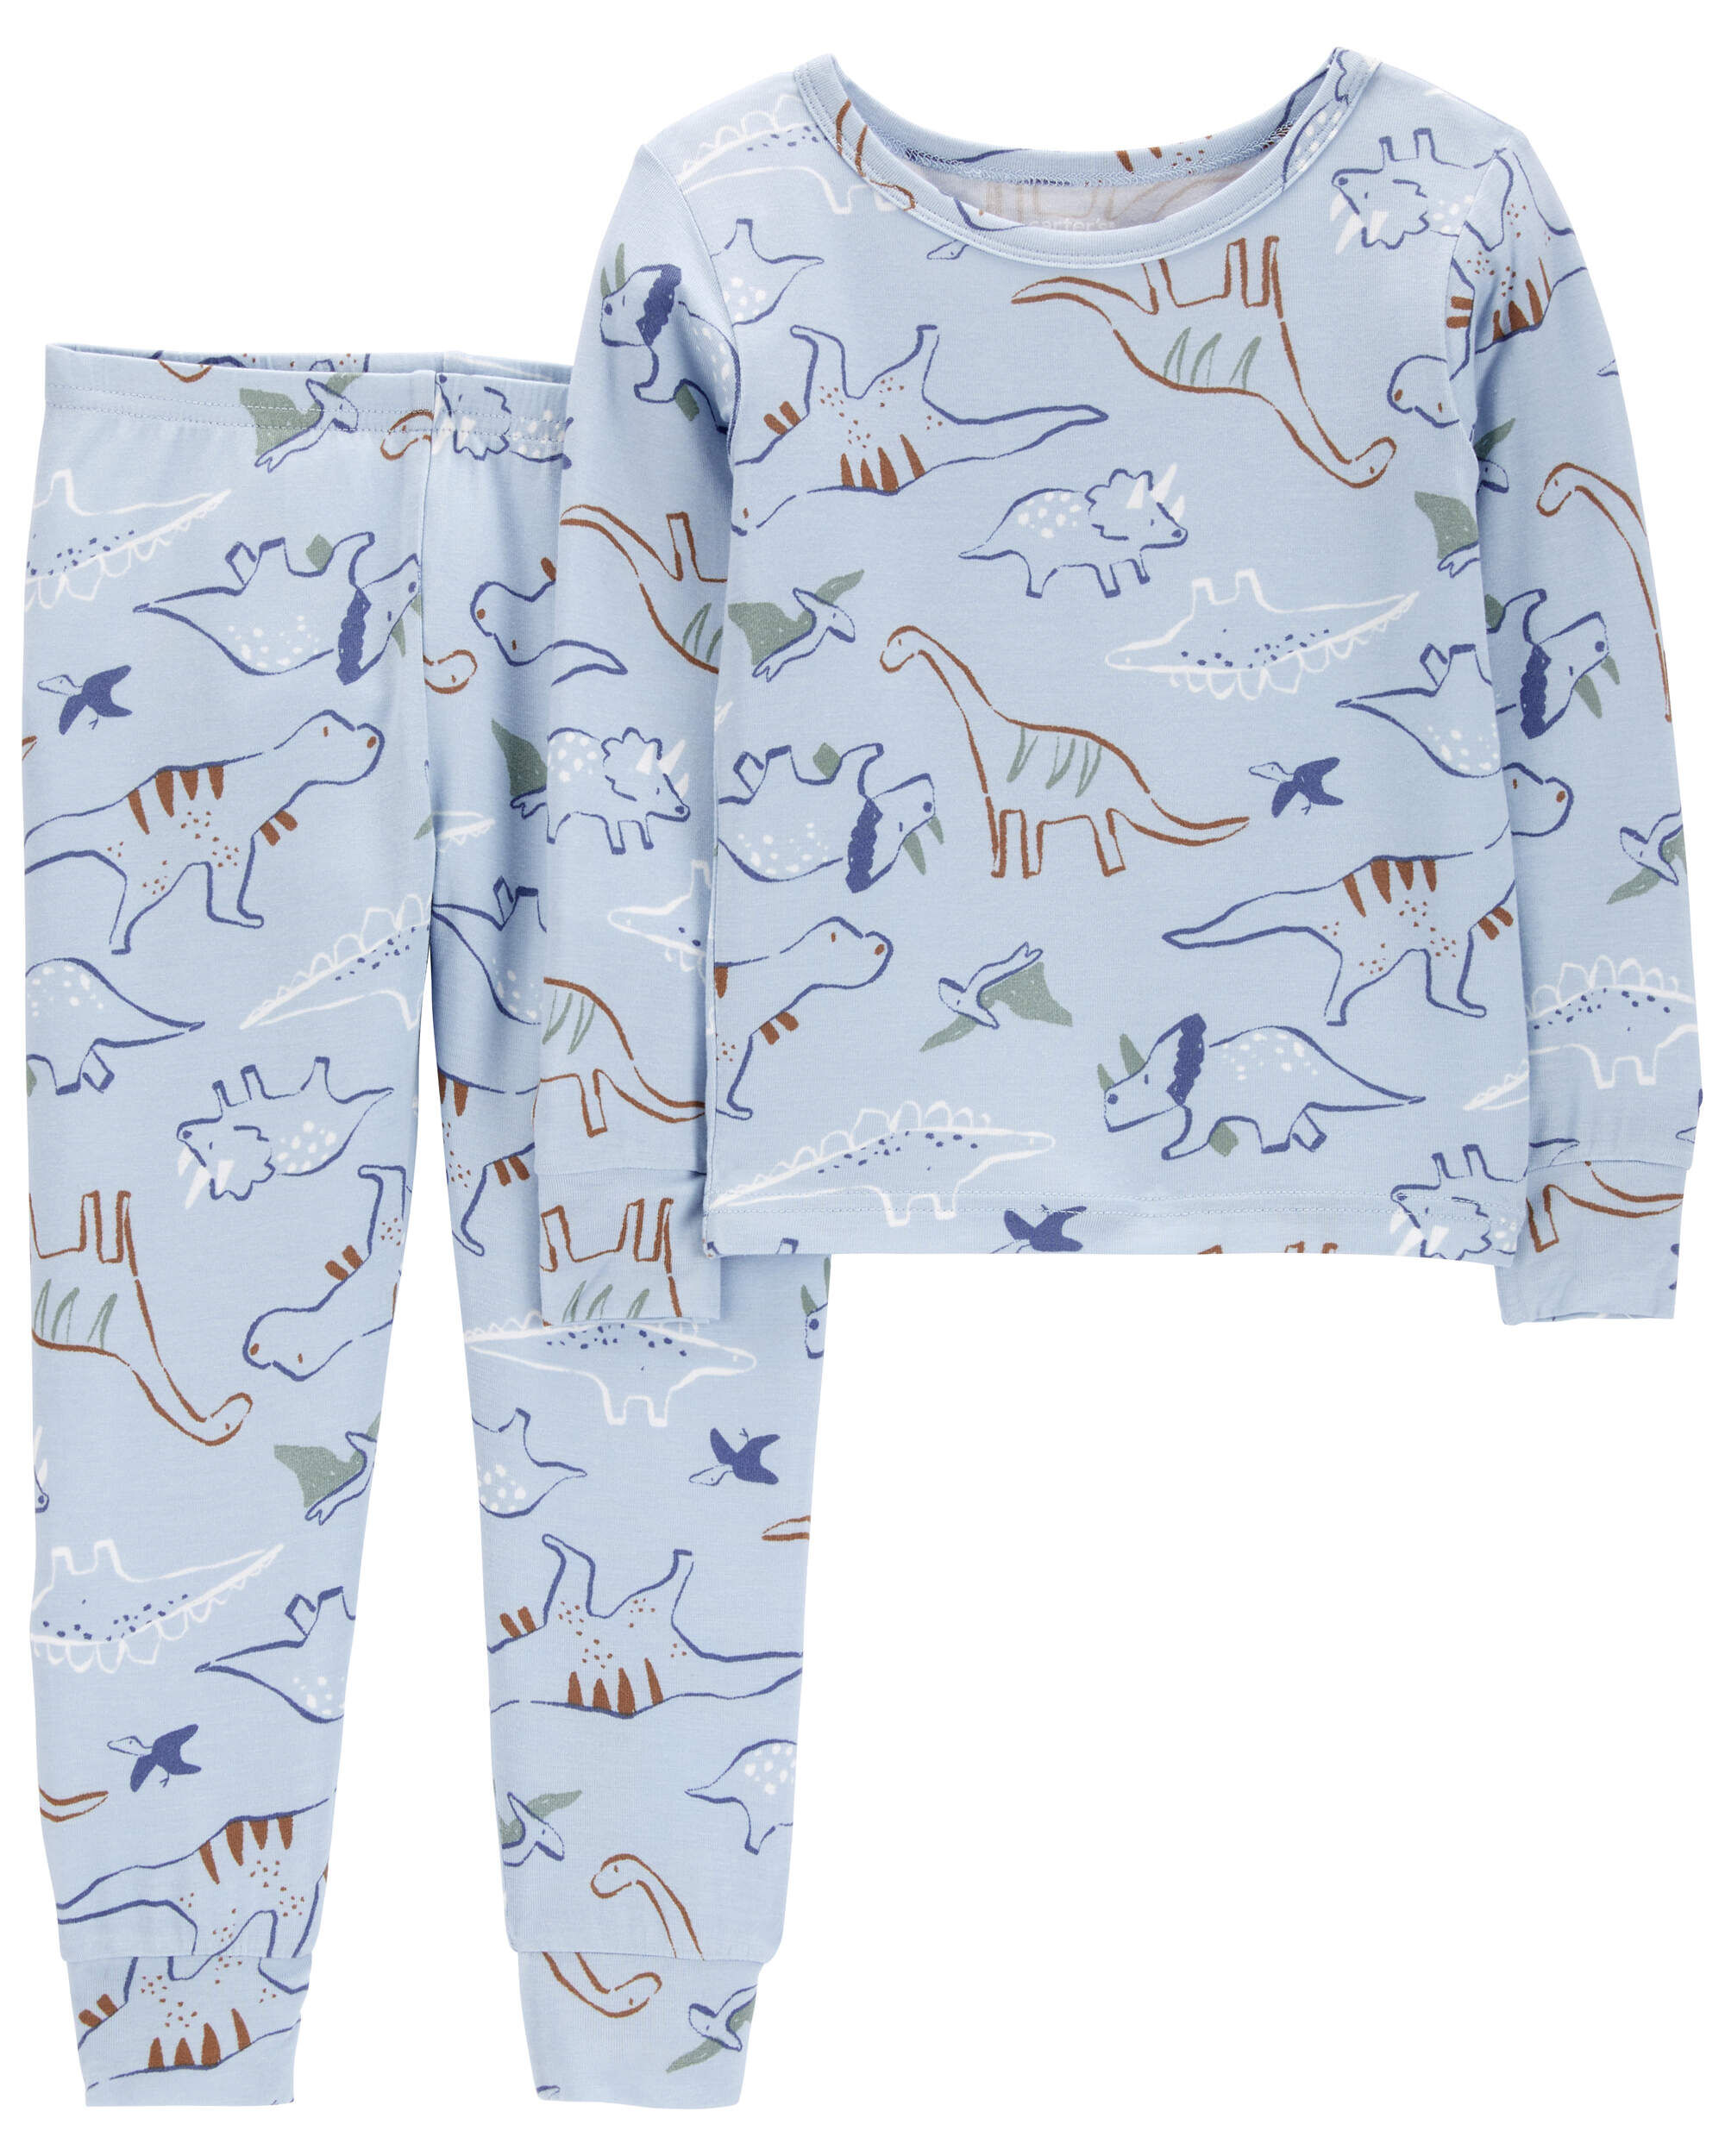 Пижамы Carter's Для мальчиков Dinosaur PurelySoft Carter's